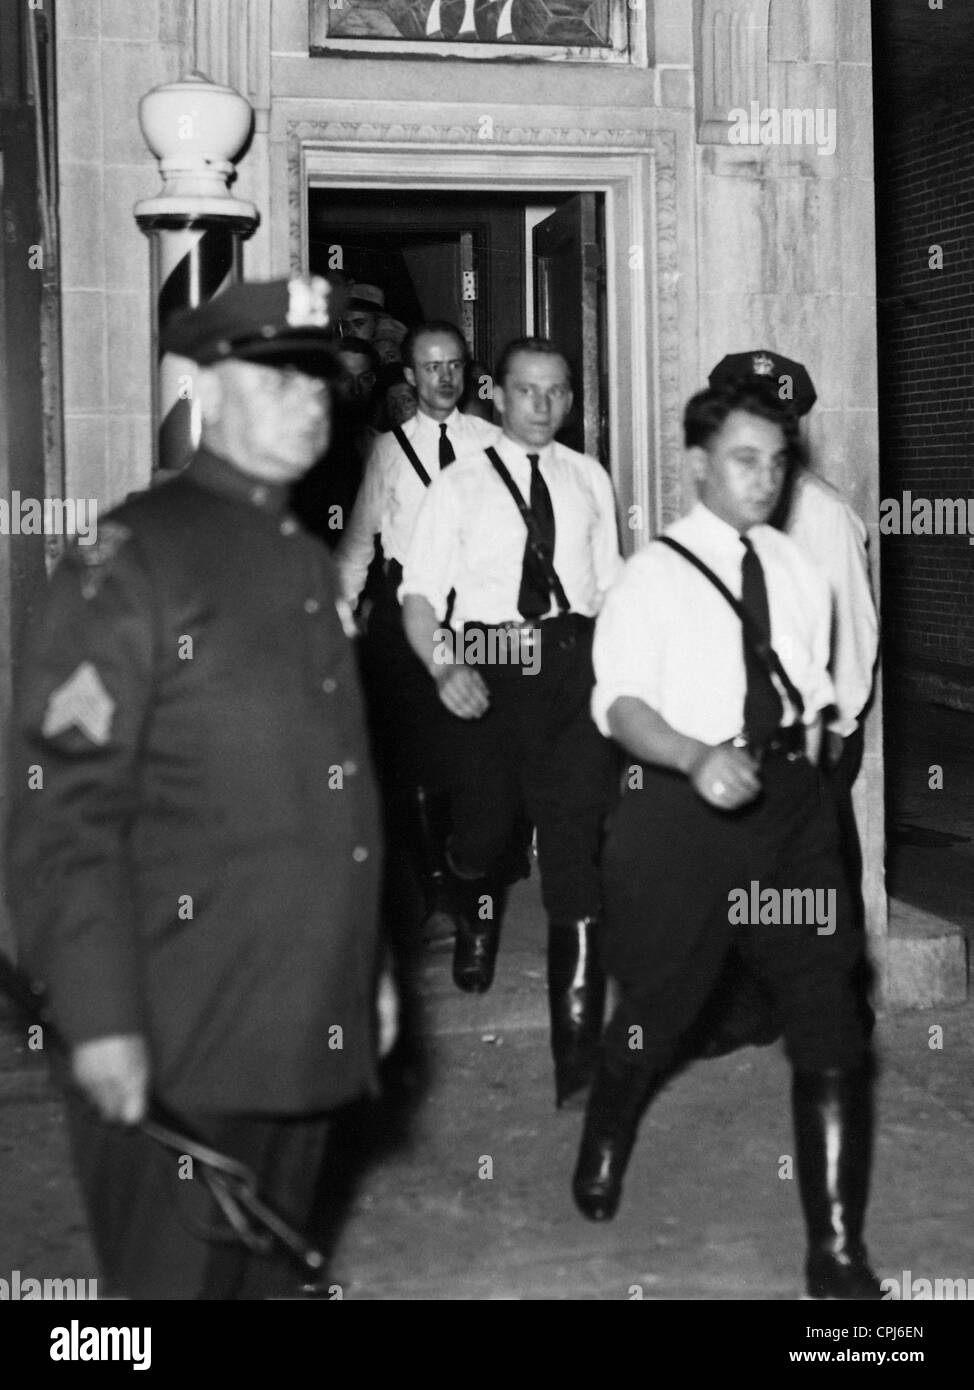 Los policías tomar seguidores nazis en seguridad, 193 Foto de stock